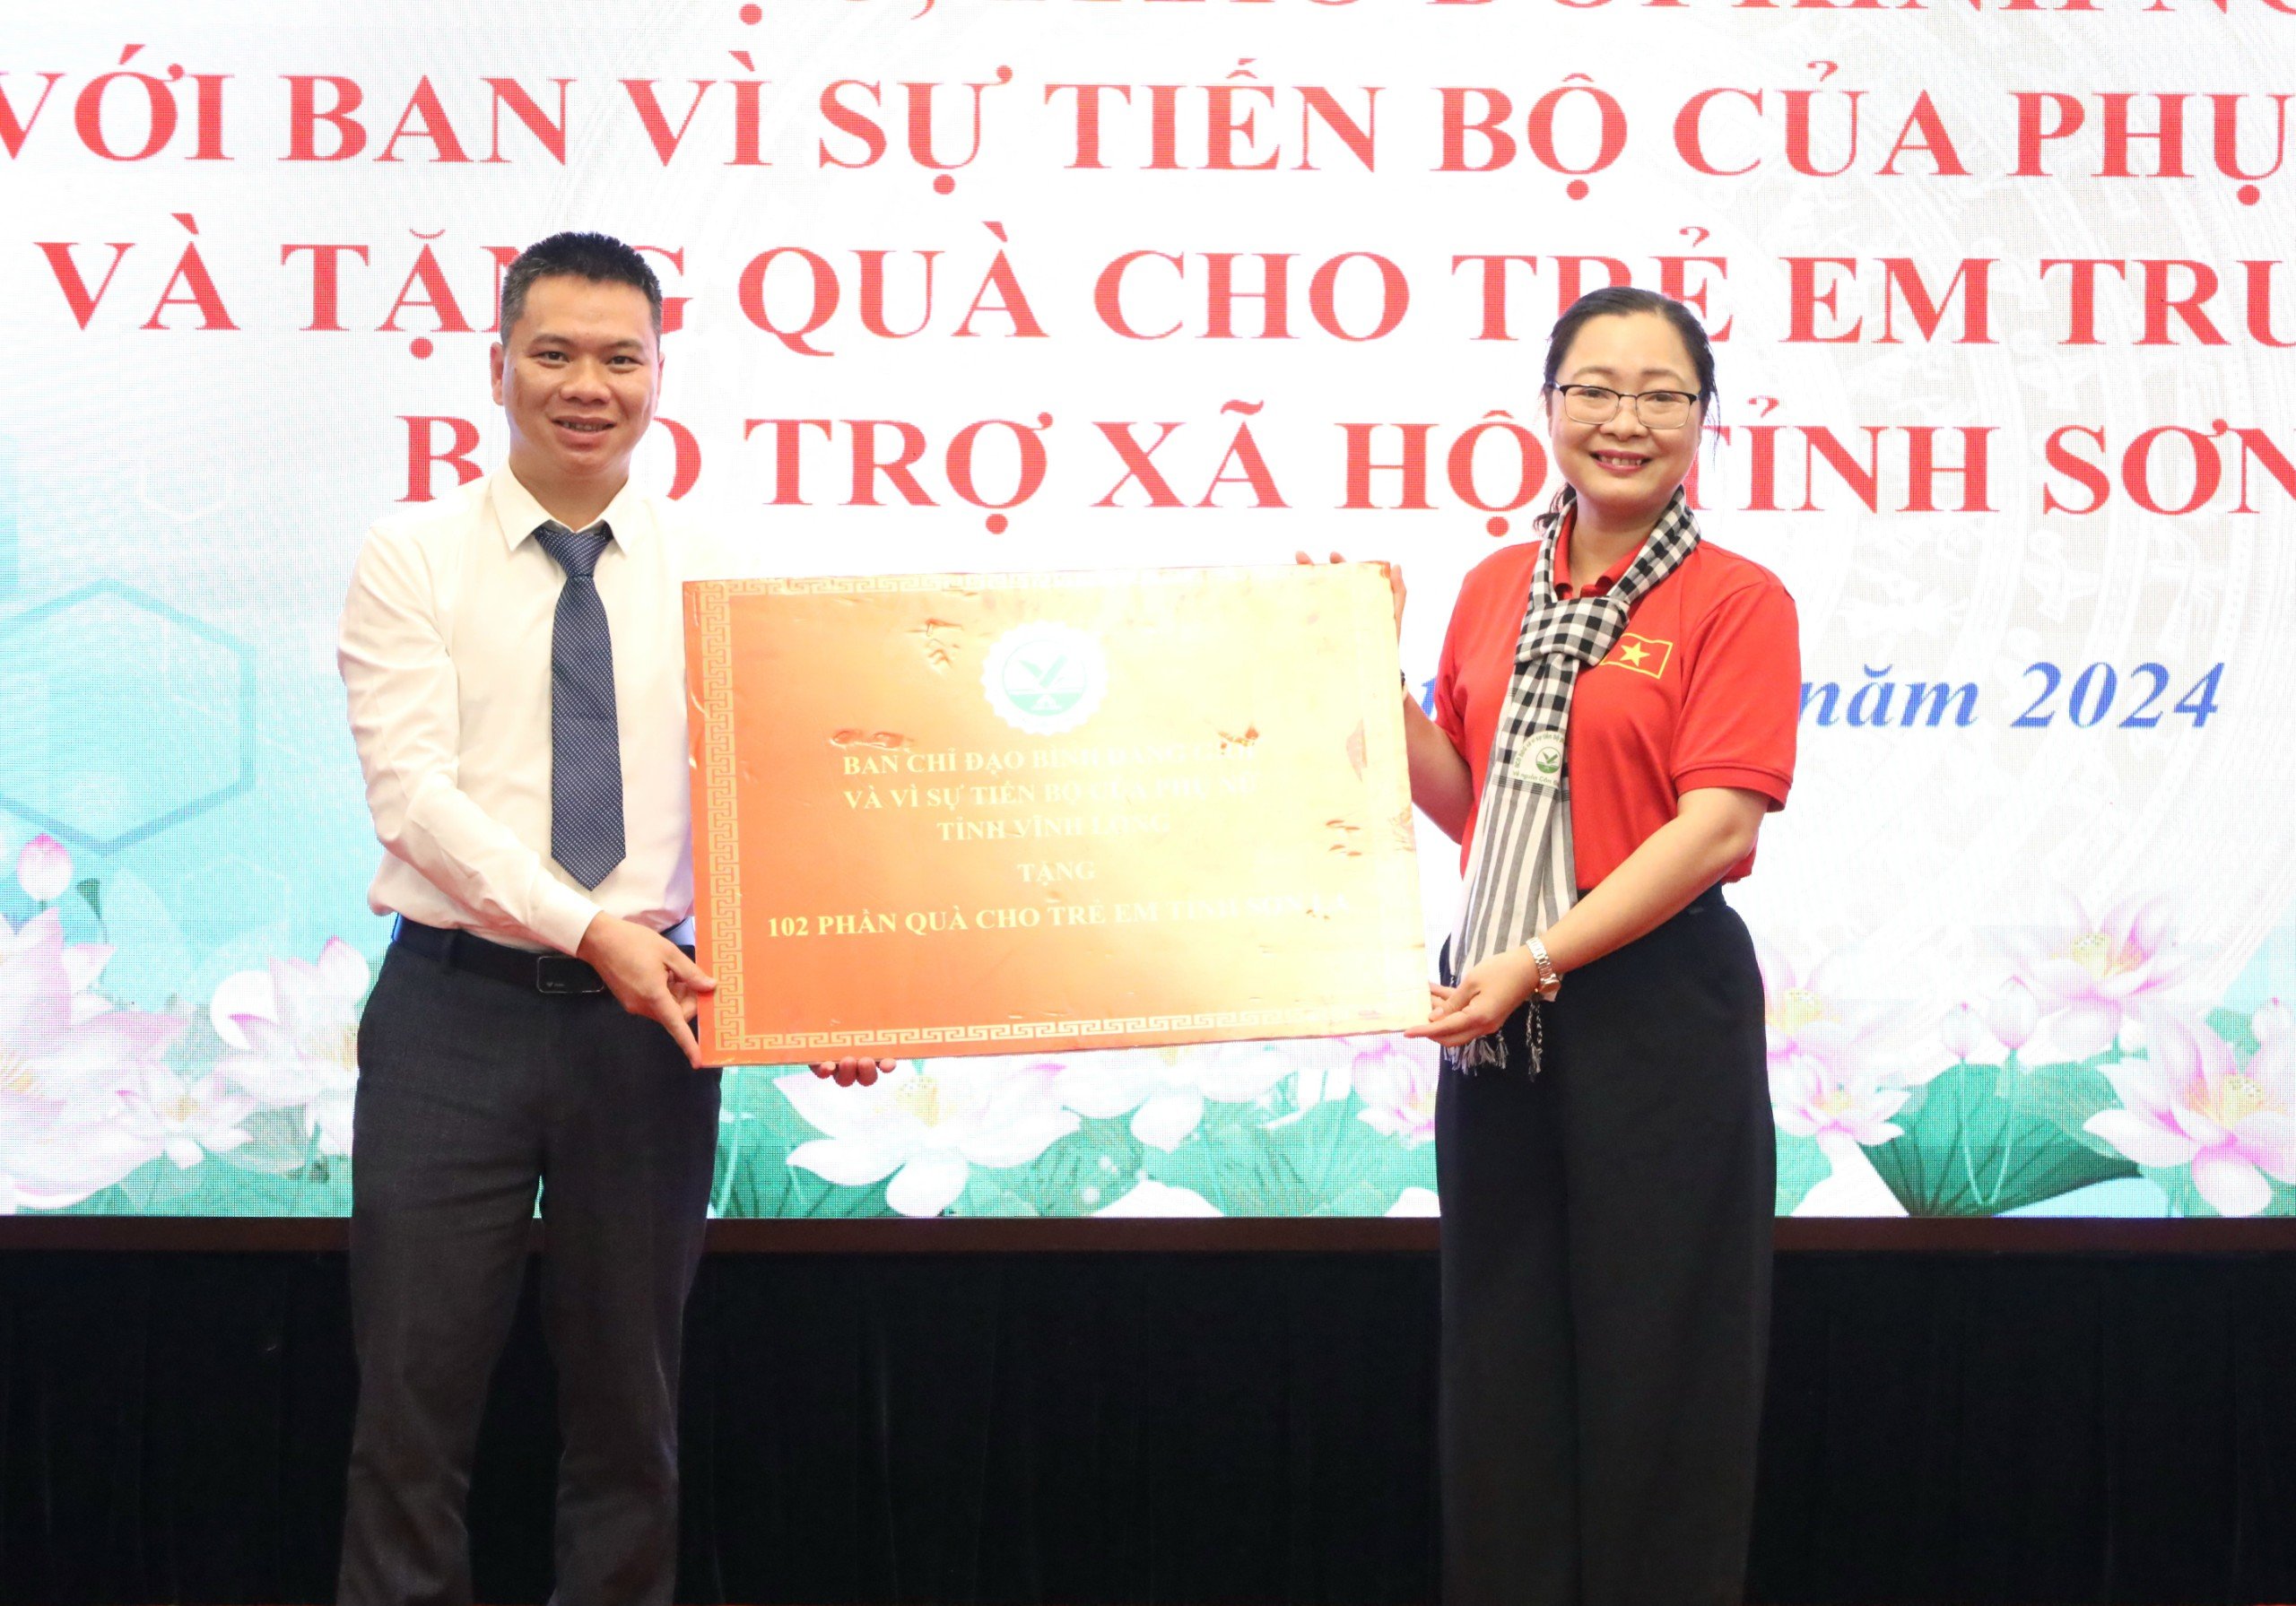 Bà Nguyễn Thị Quyên Thanh - Phó Chủ tịch UBND tỉnh, Trưởng ban Chỉ đạo bình đẳng giới và vì sự tiến bộ của phụ nữ tỉnh Vĩnh Long trao tặng quà cho trẻ em Trung tâm Bảo trợ xã hội tỉnh Sơn La.